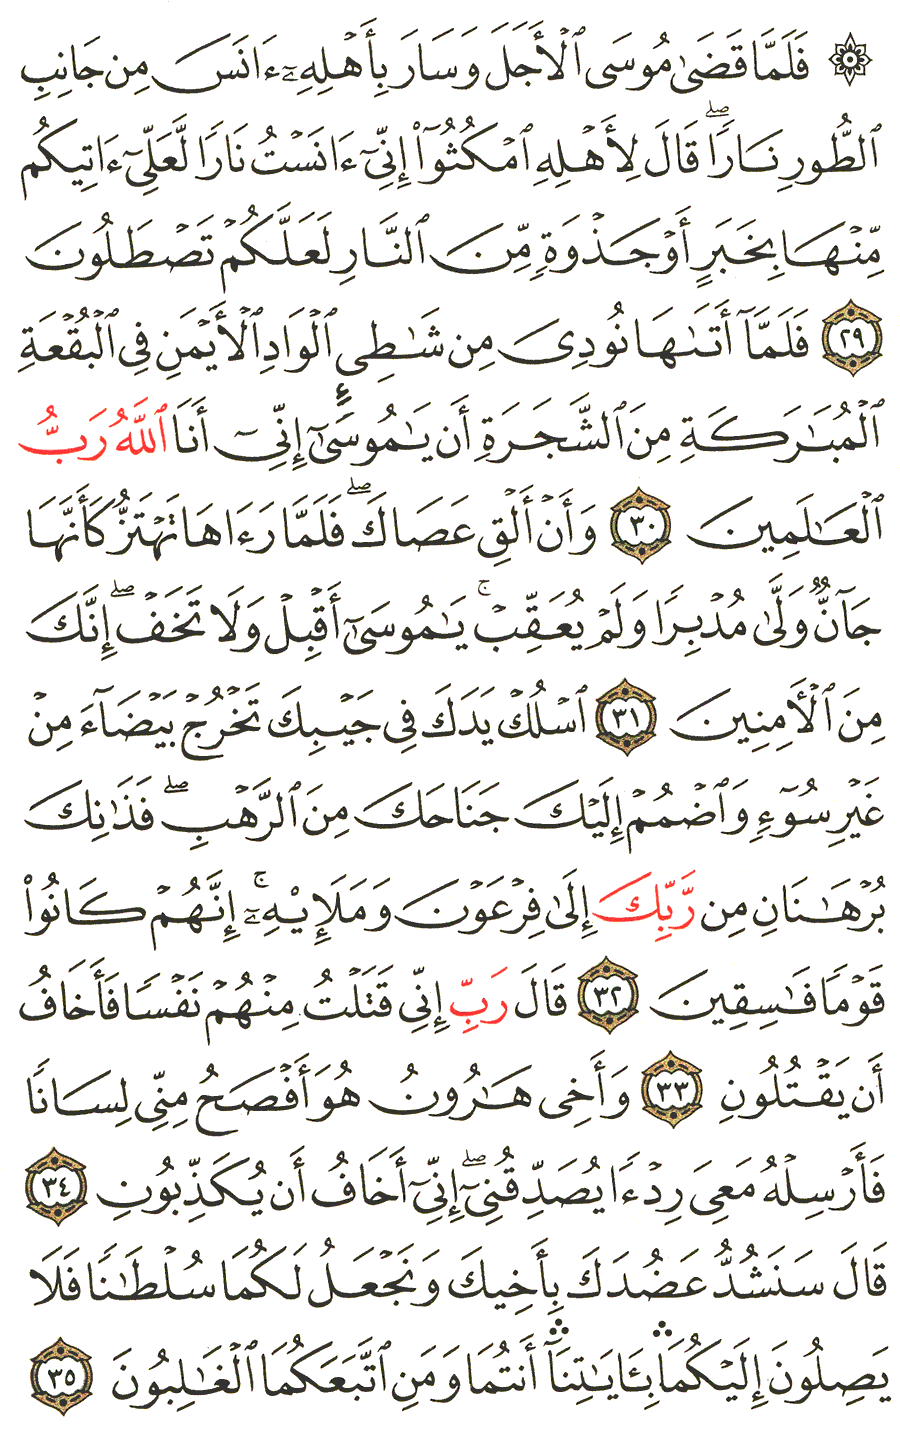 الصفحة رقم 389  من القرآن الكريم مكتوبة من المصحف